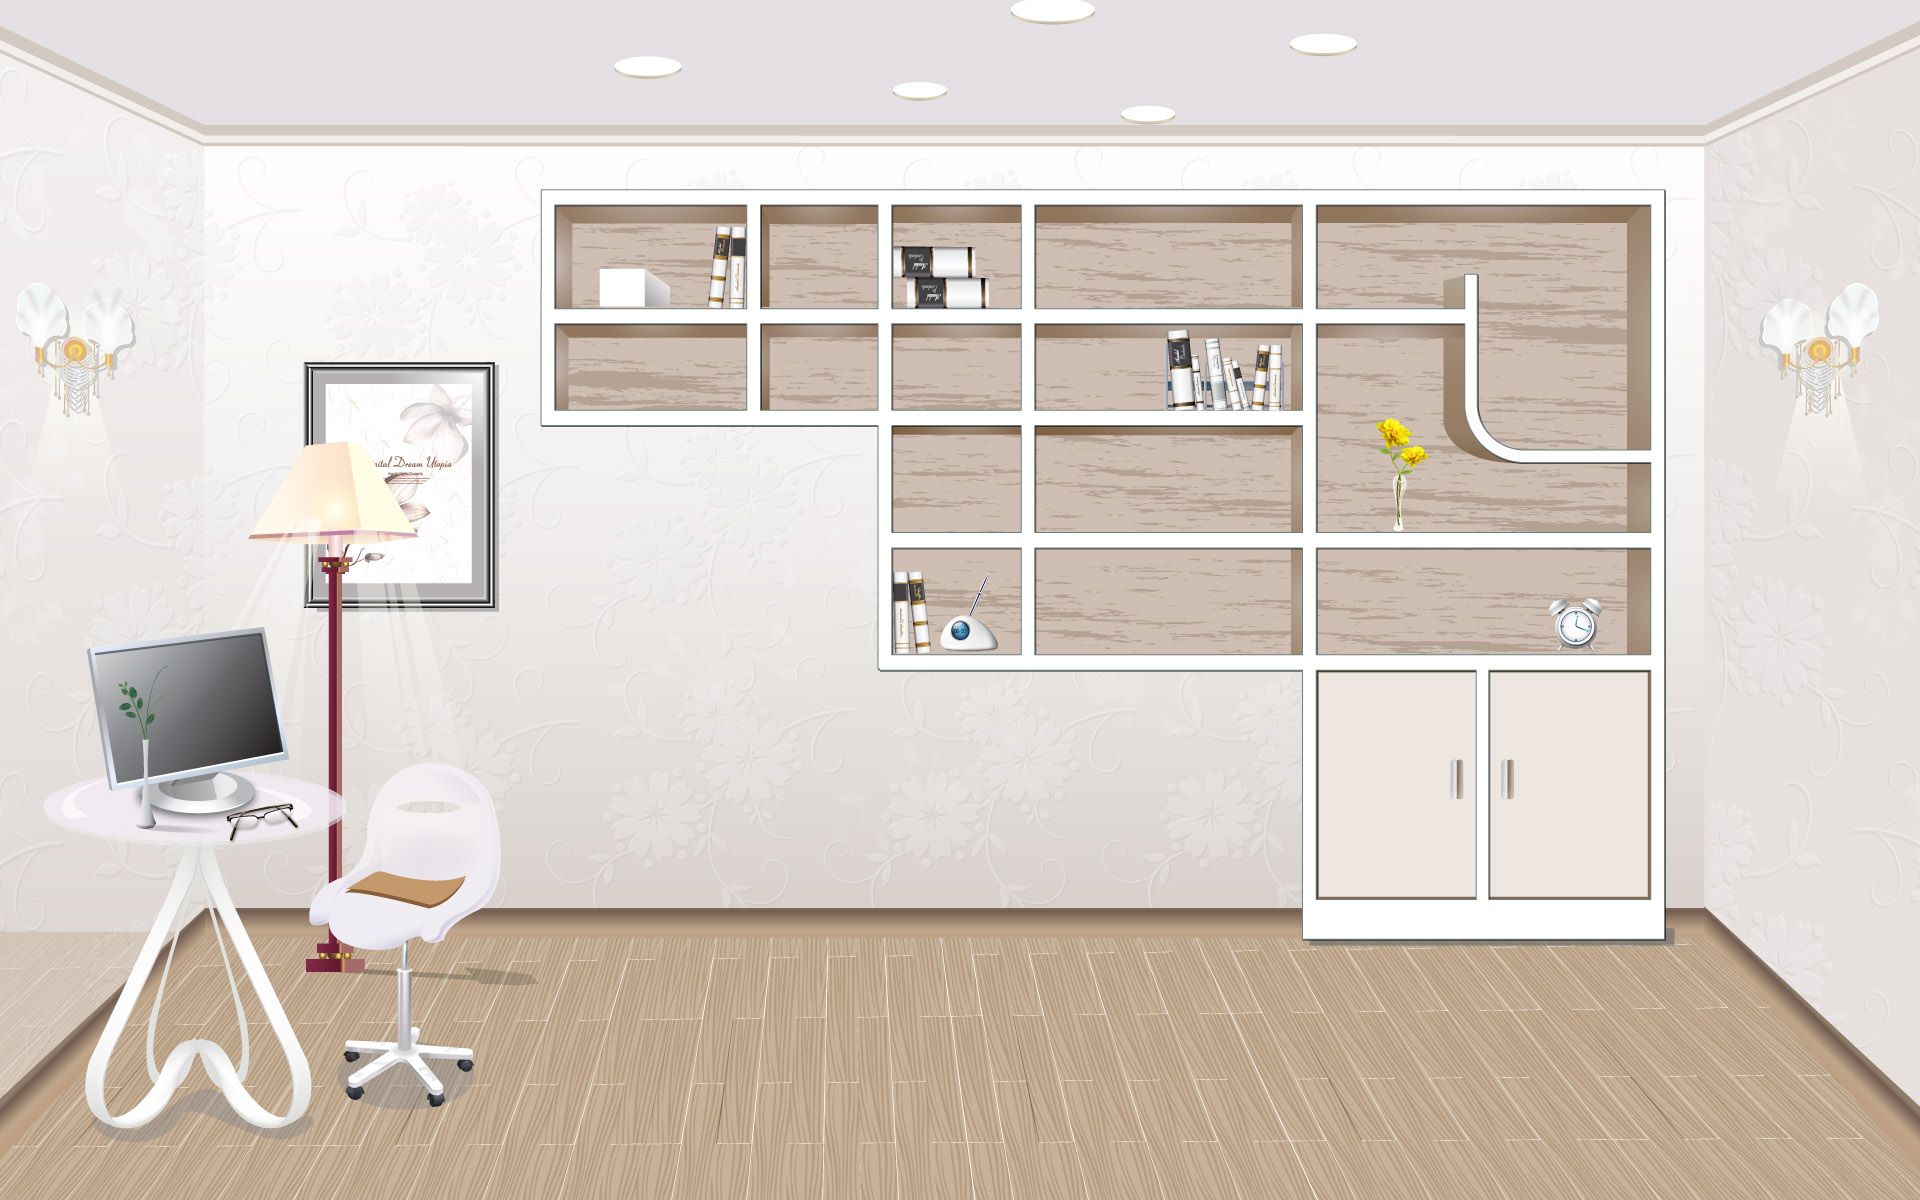 empty office wallpaper,wall,room,interior design,floor,door